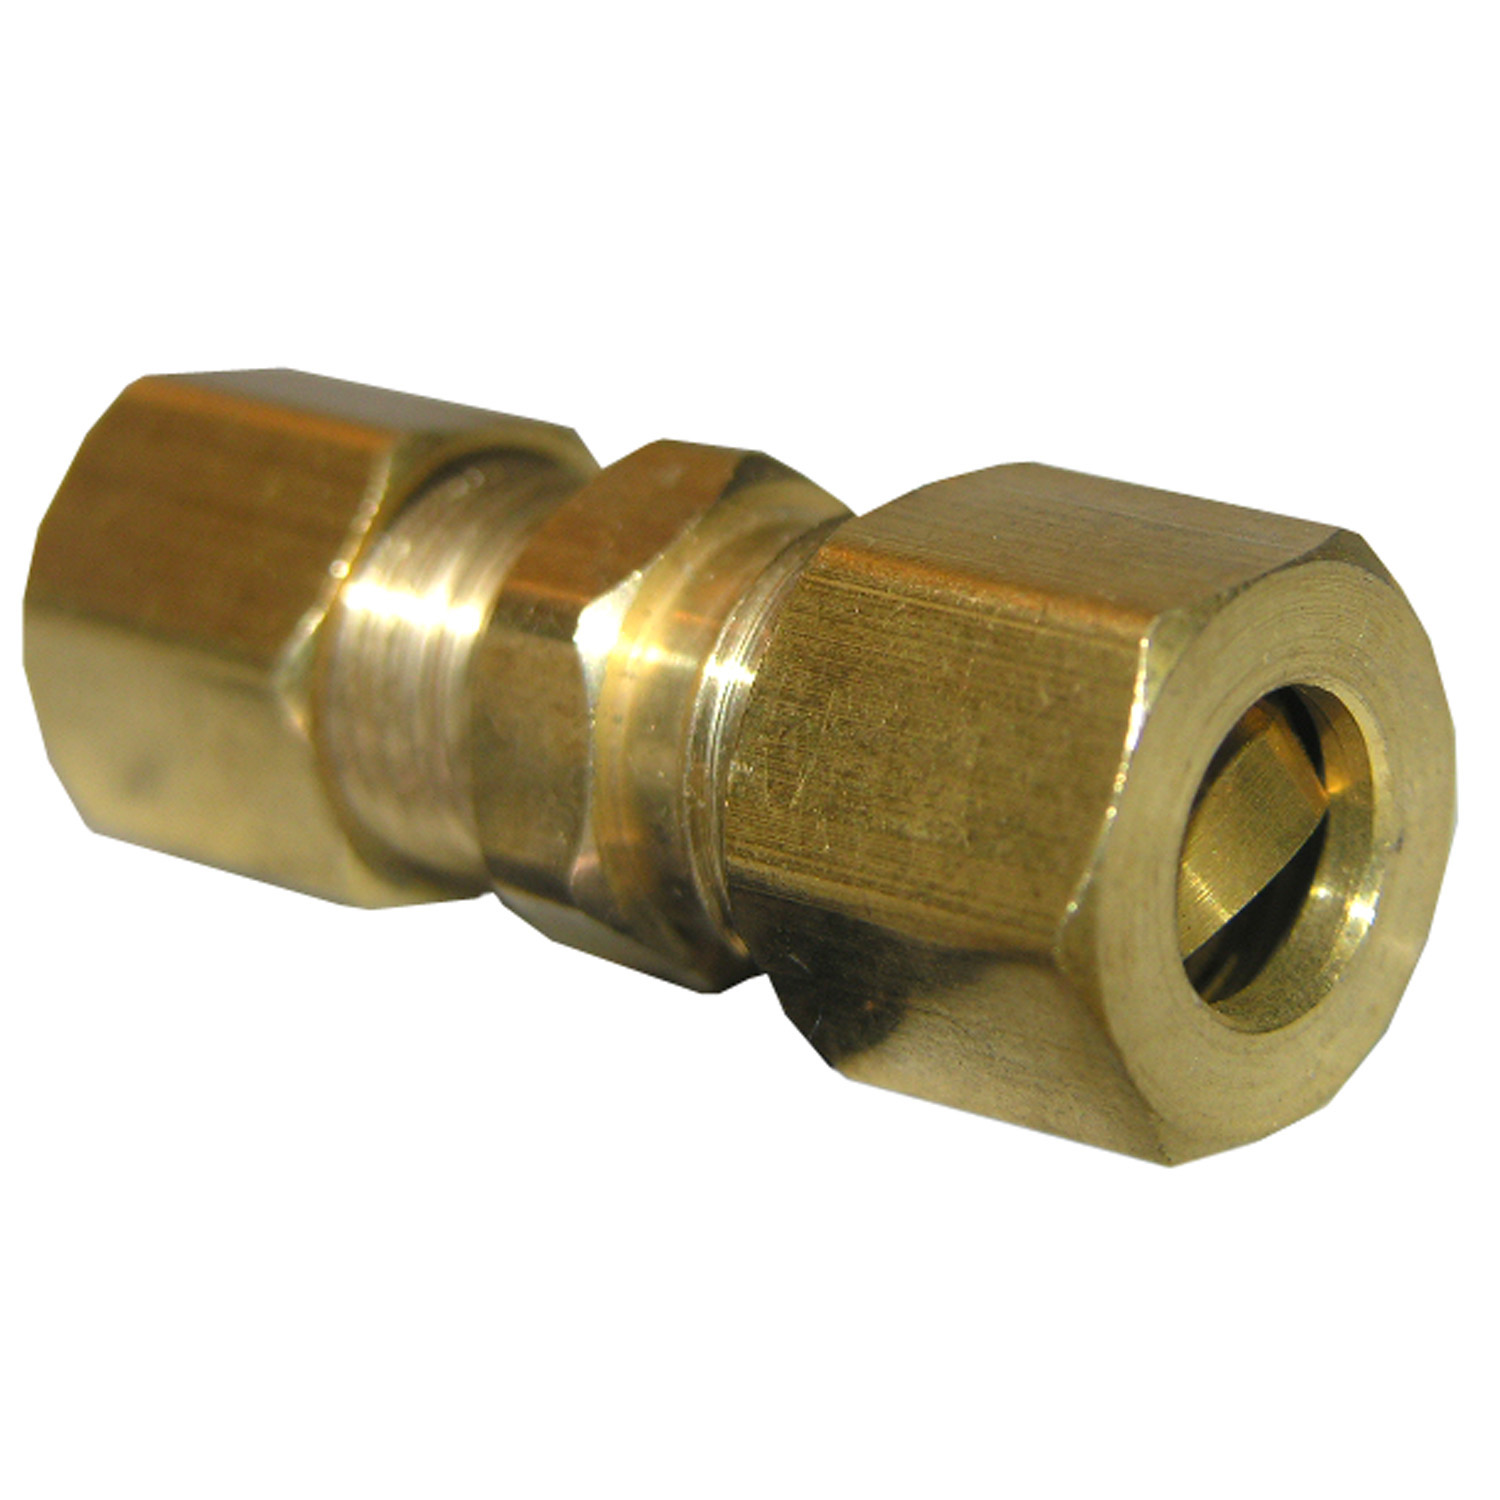 17-6211 Pipe Union, 1/4 in, Compression, Brass, 150 psi Pressure